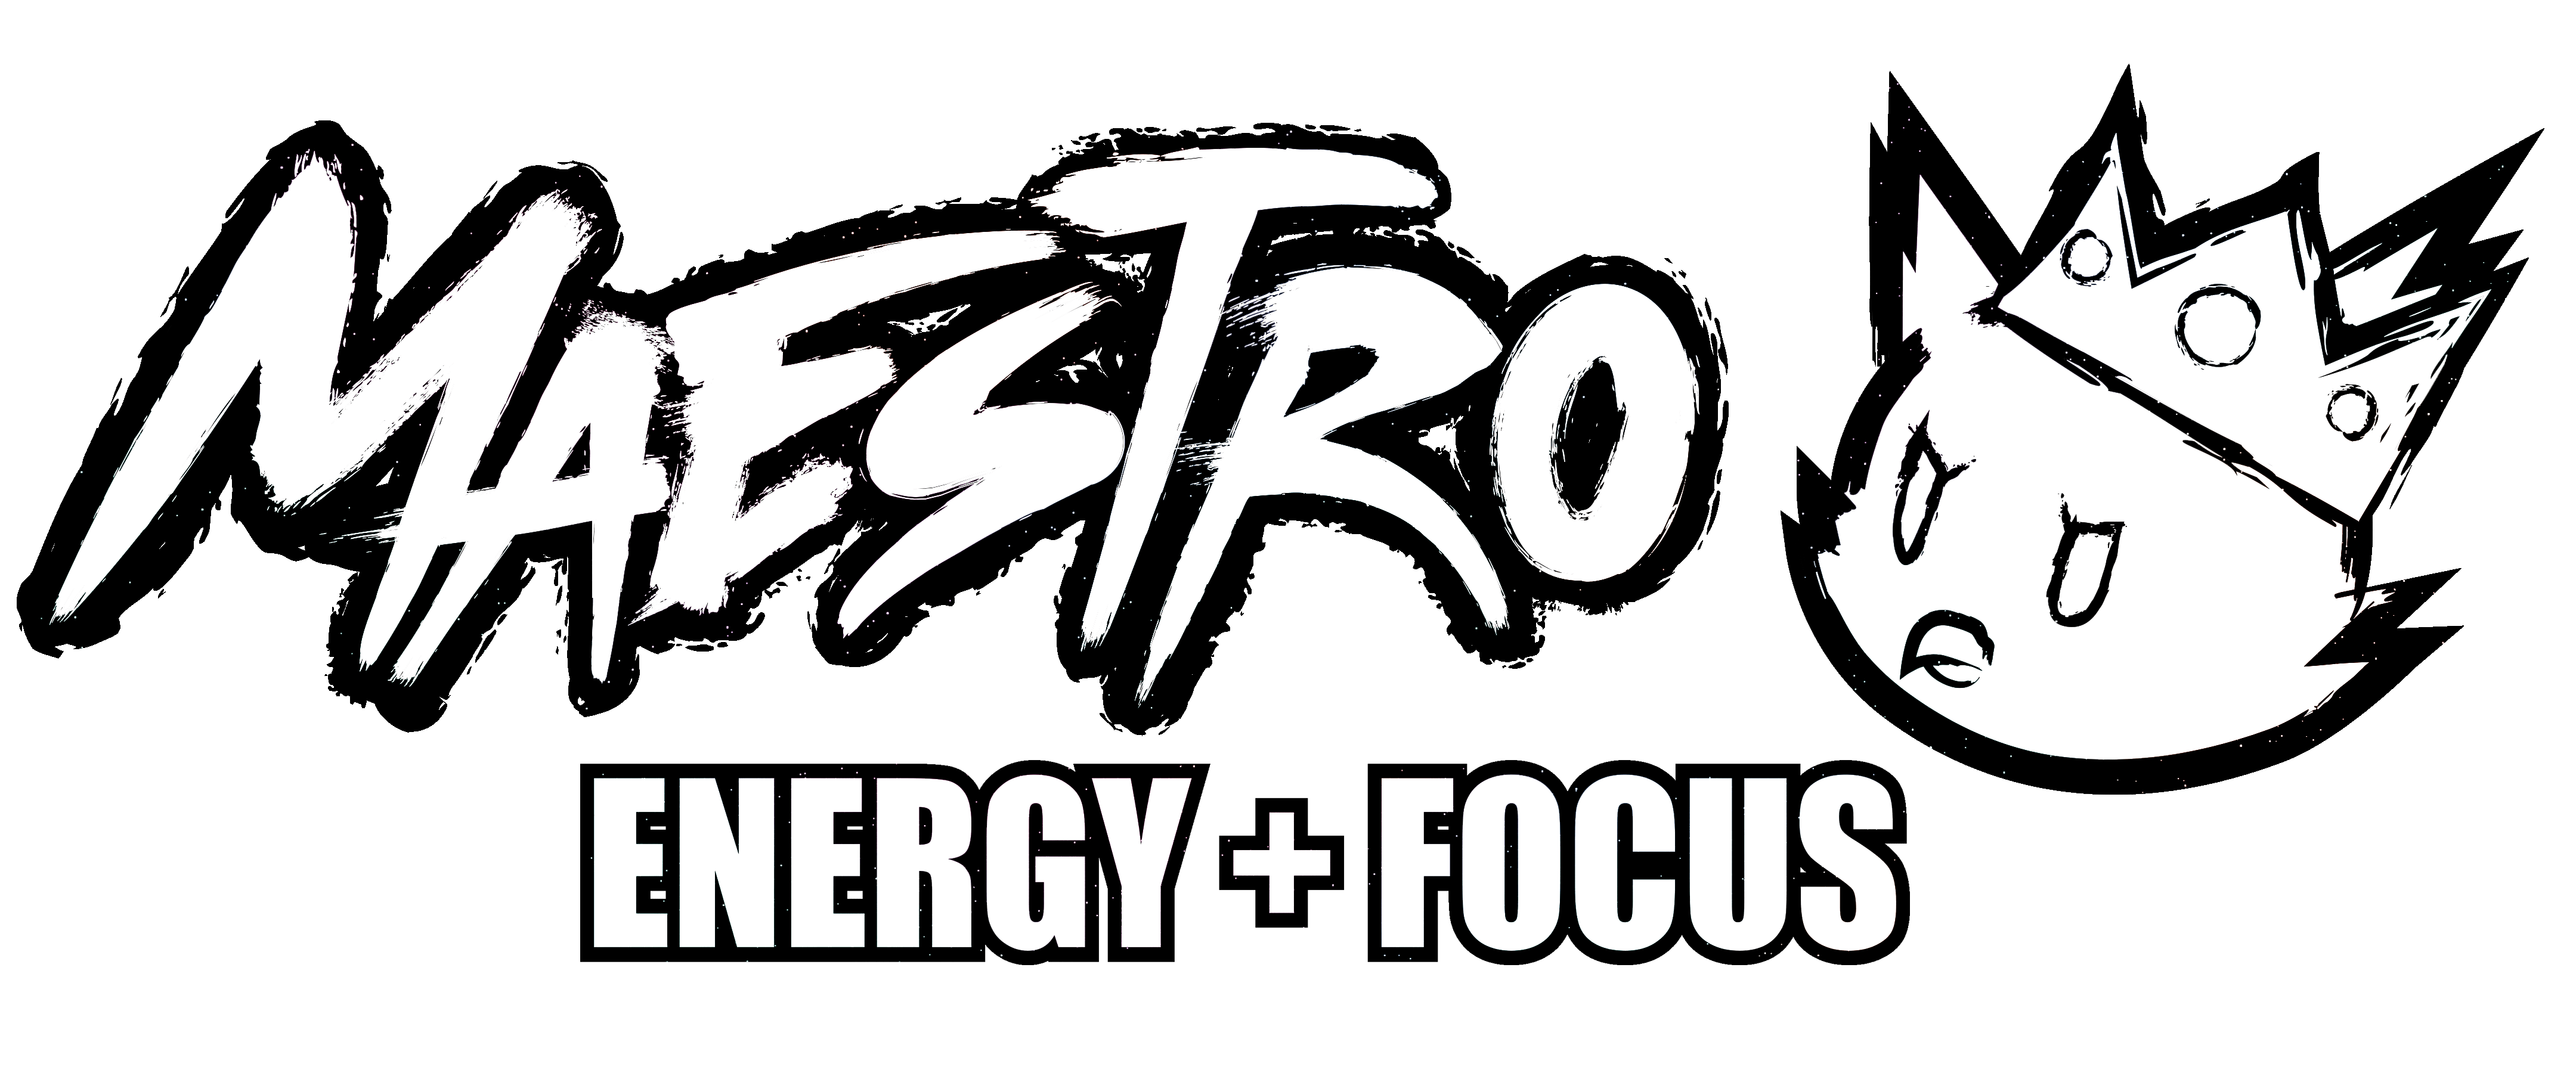 Aurora Maestro - Black Energy and Focus